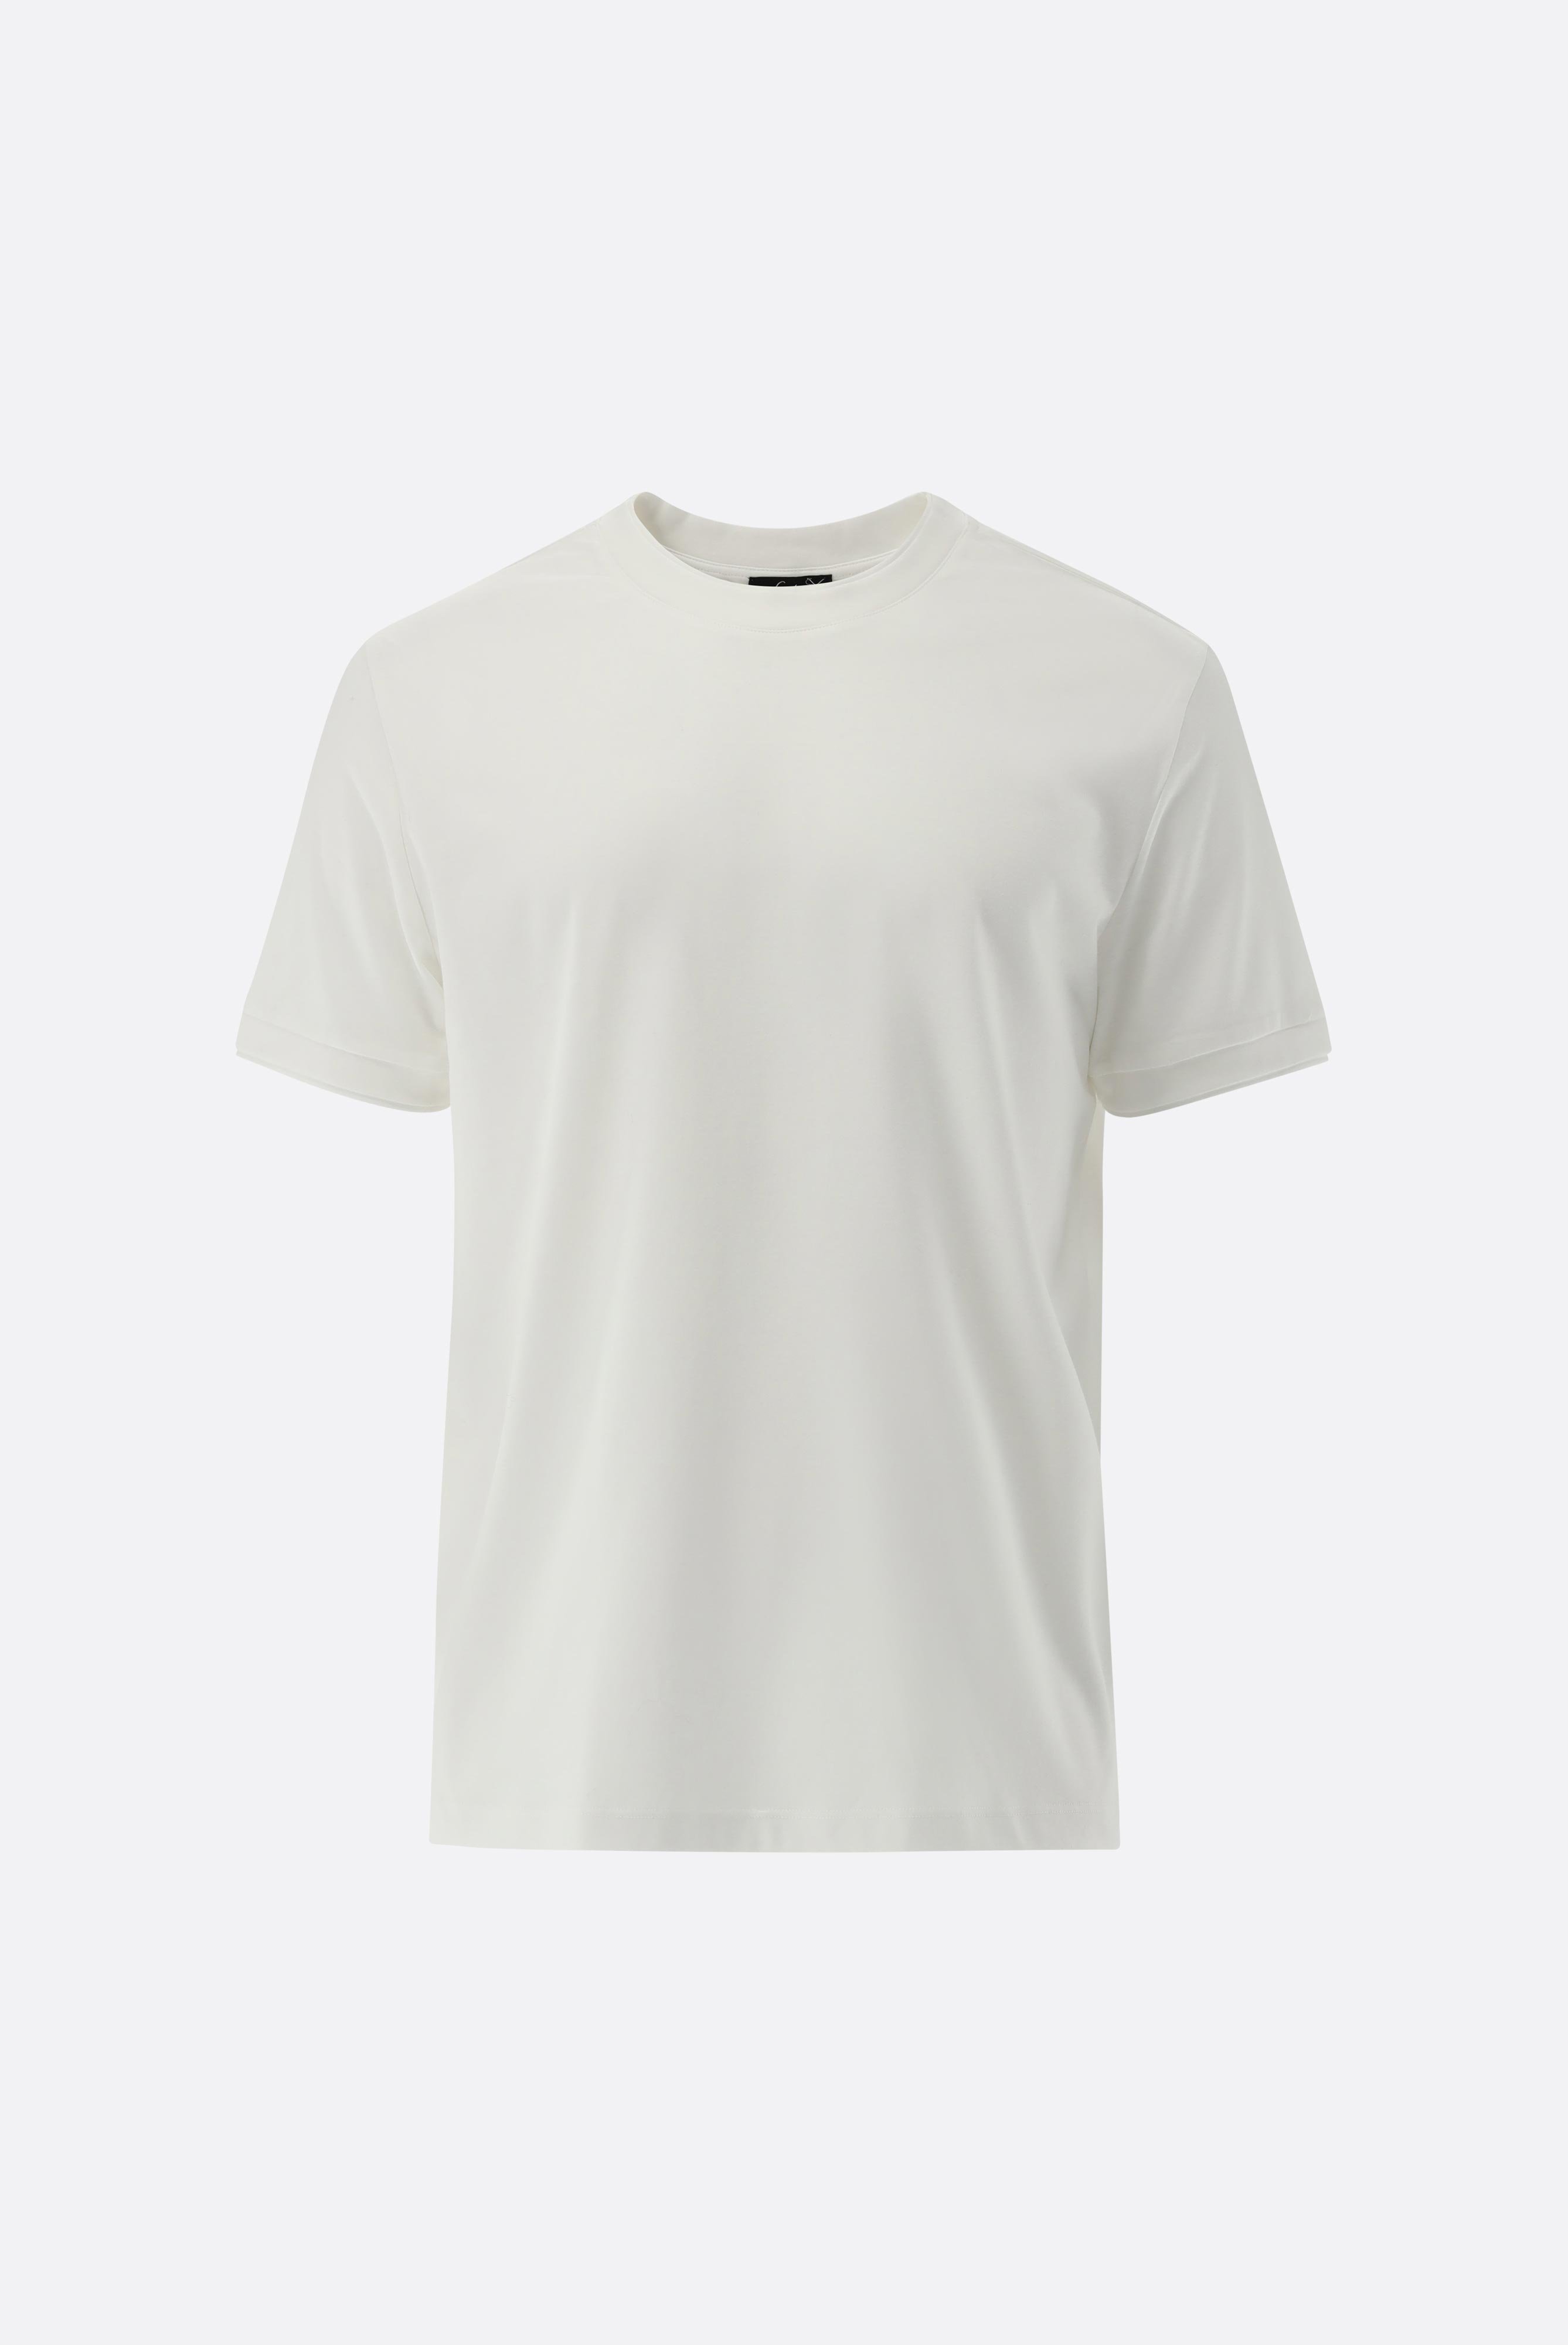 T-Shirts+T-Shirt mit Paspel Details+20.1673.U2.180053.000.XS